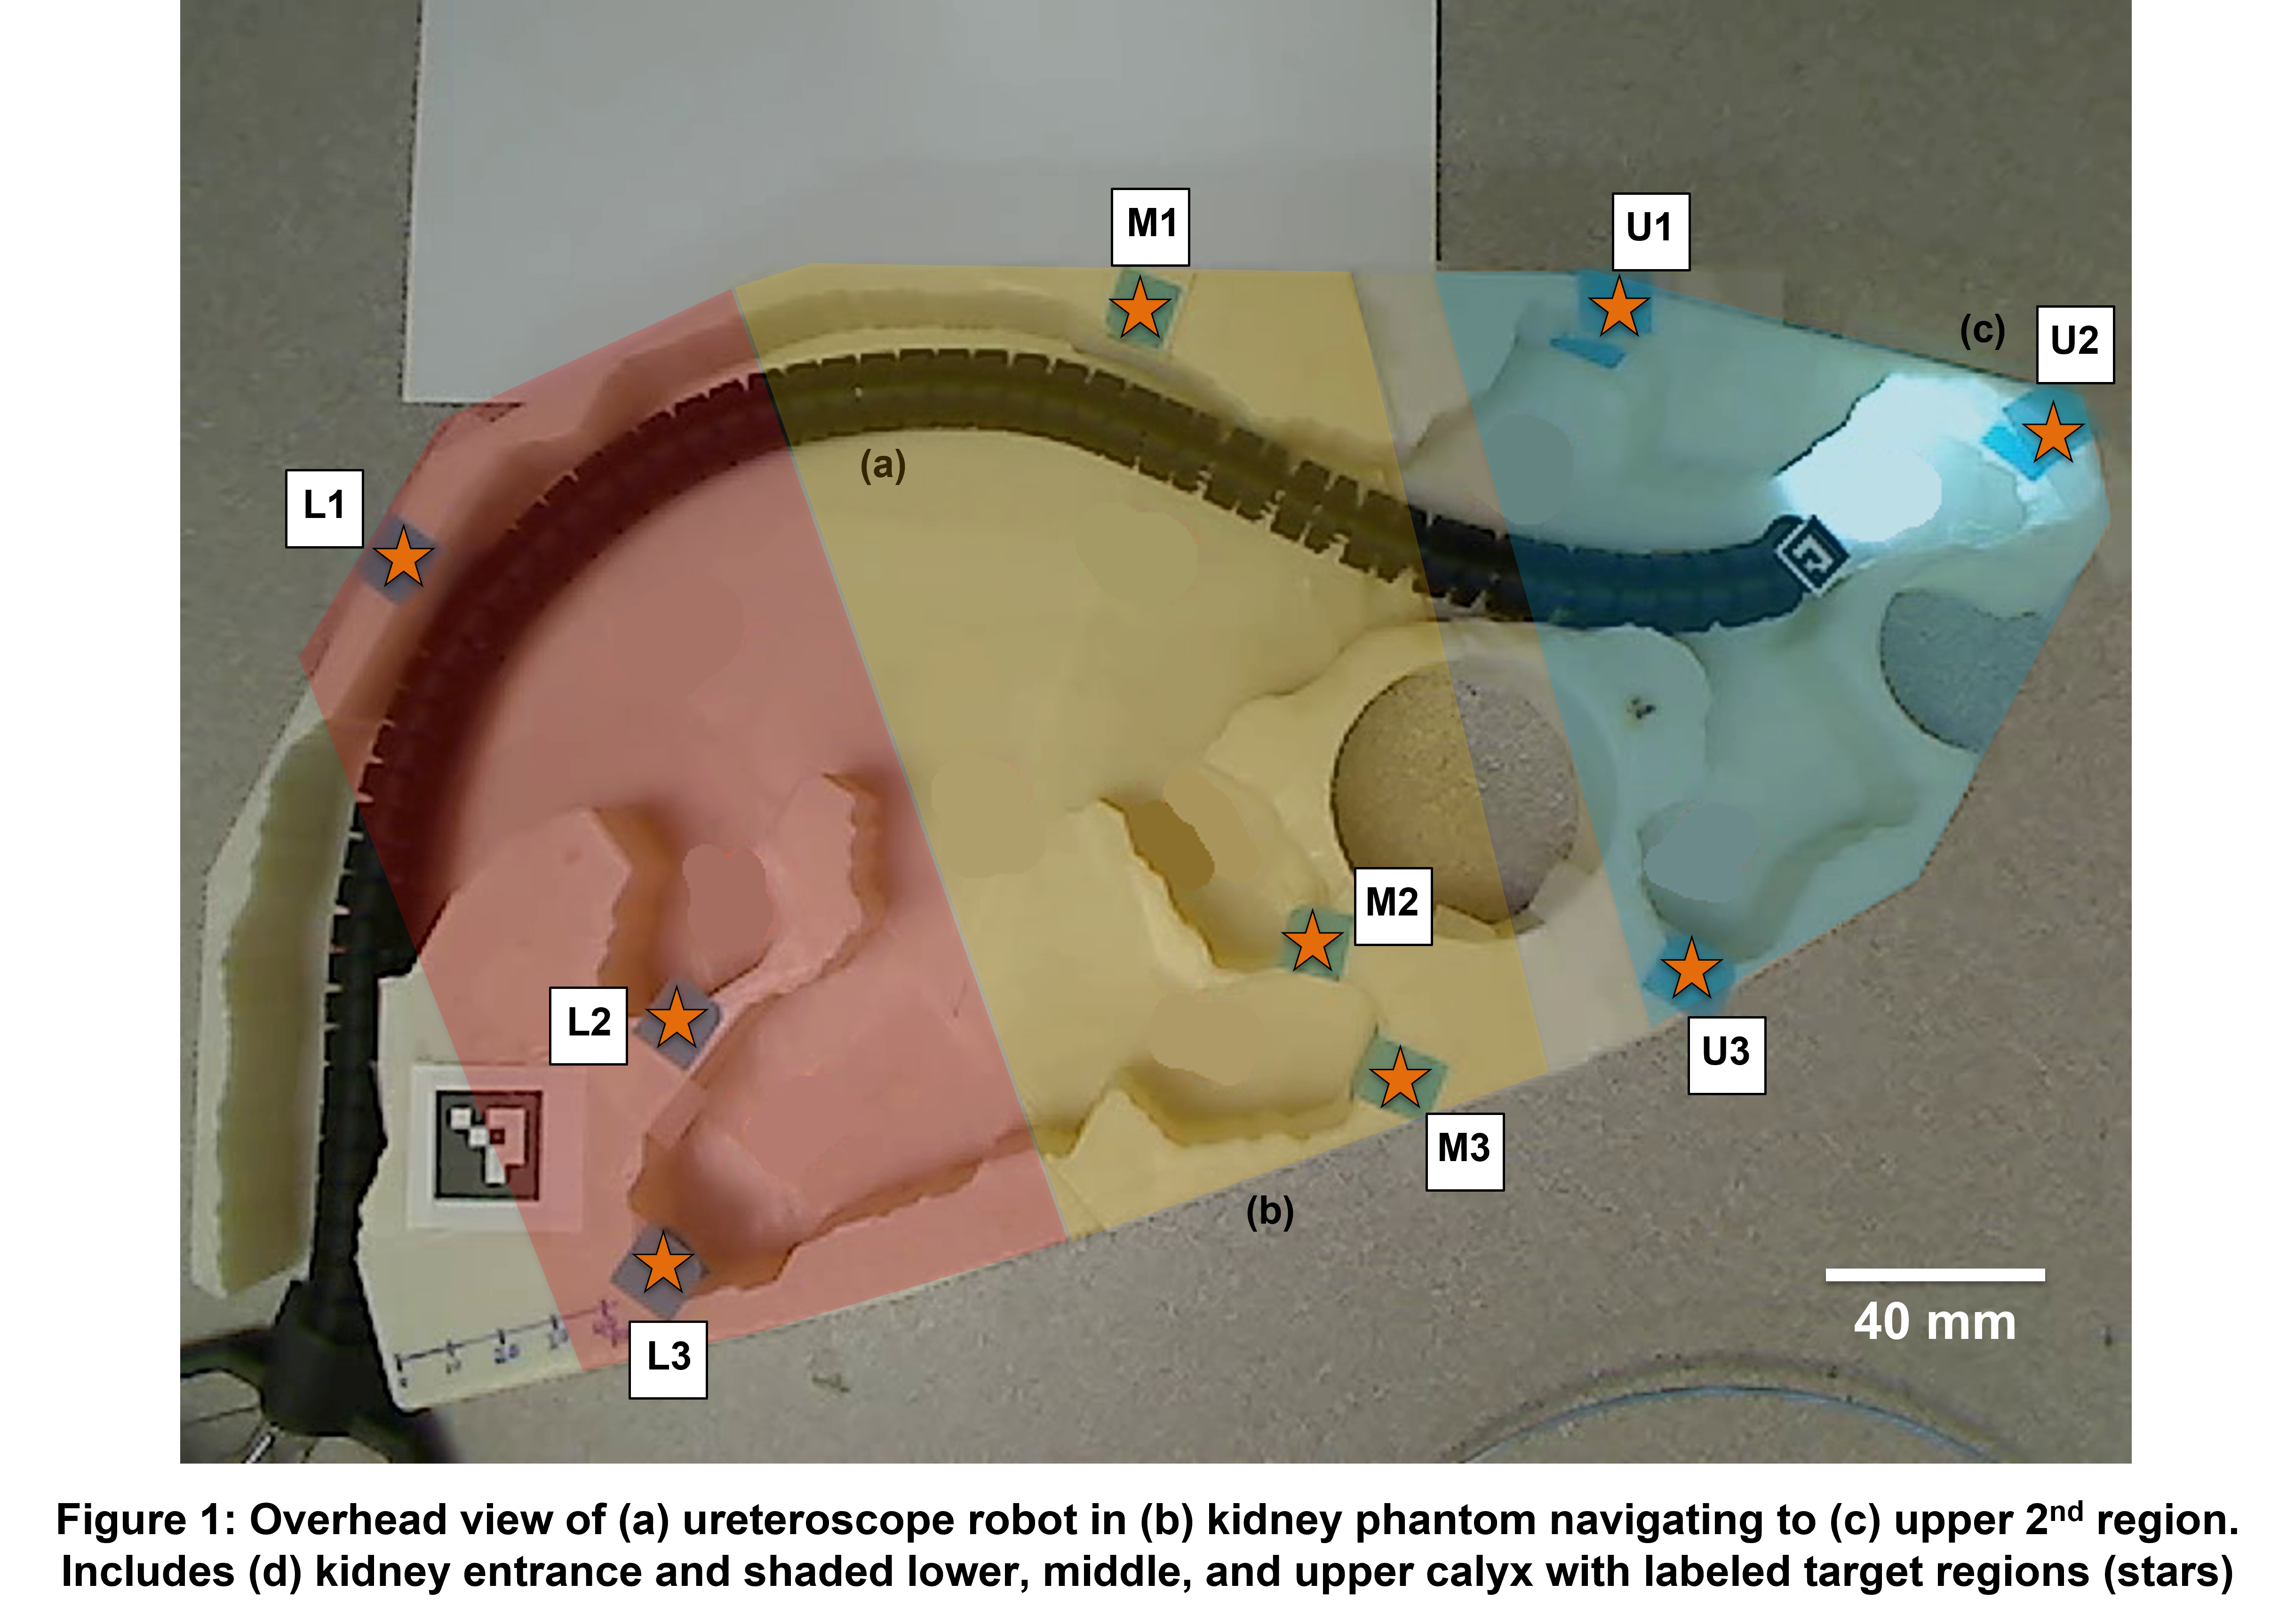 urétéroscope robotisé montage expérimental vue de dessus